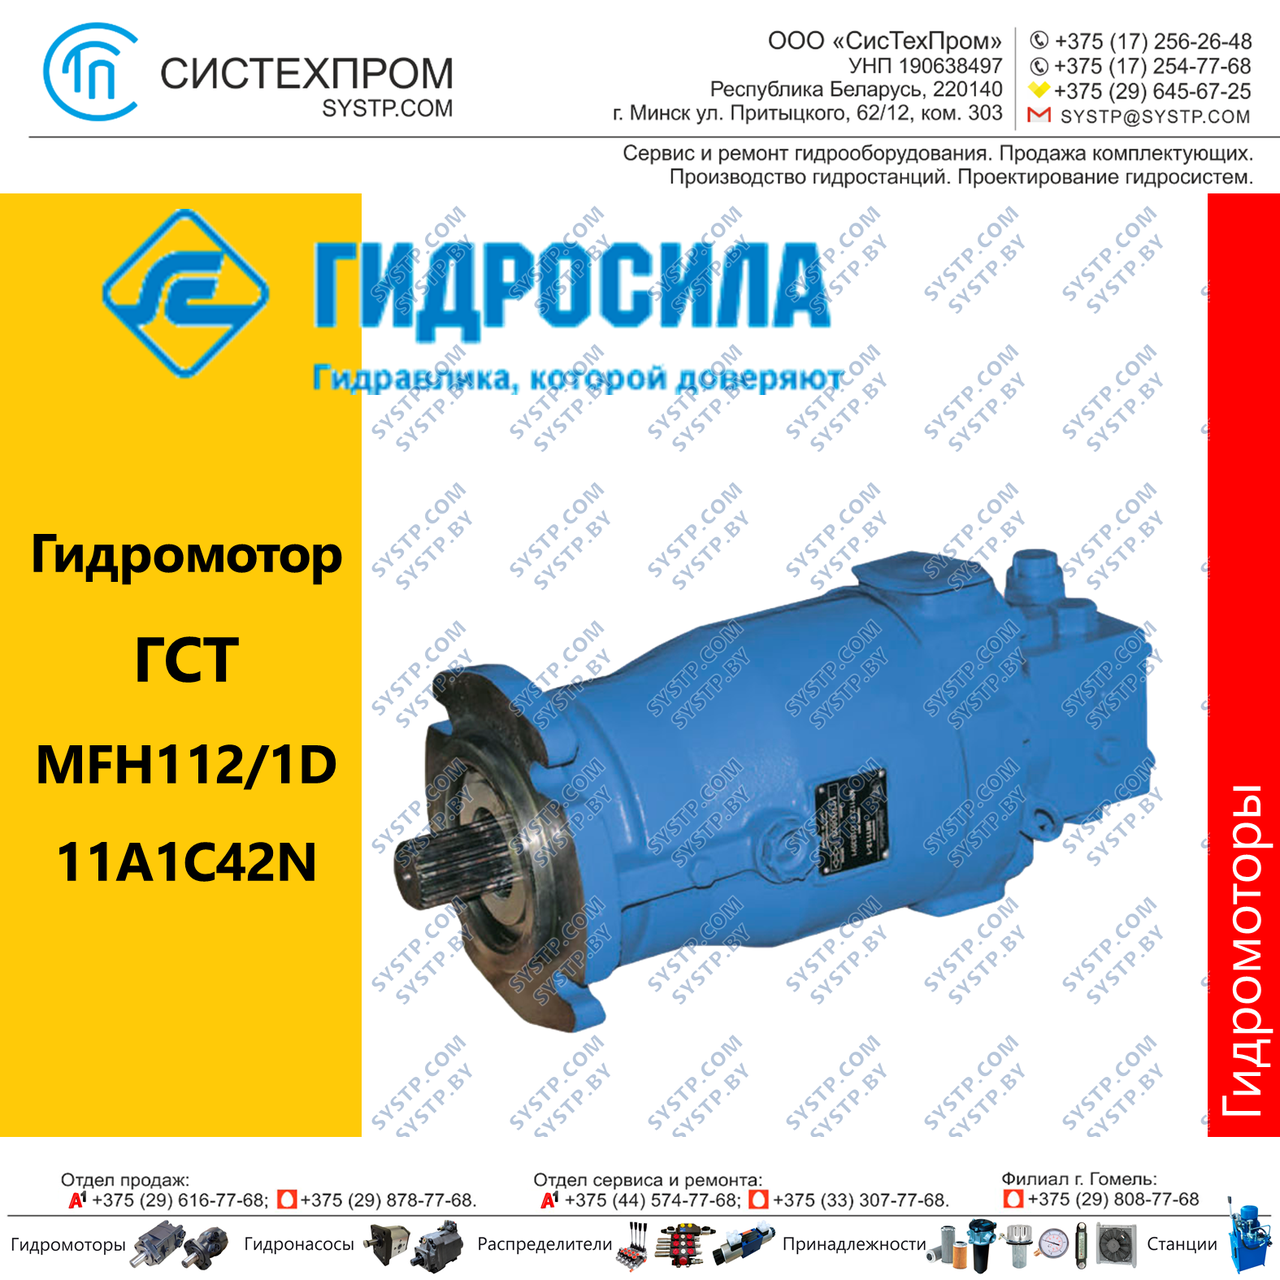 Гидромотор аксиально-поршневой MFH112/1D11A1C42N Украина